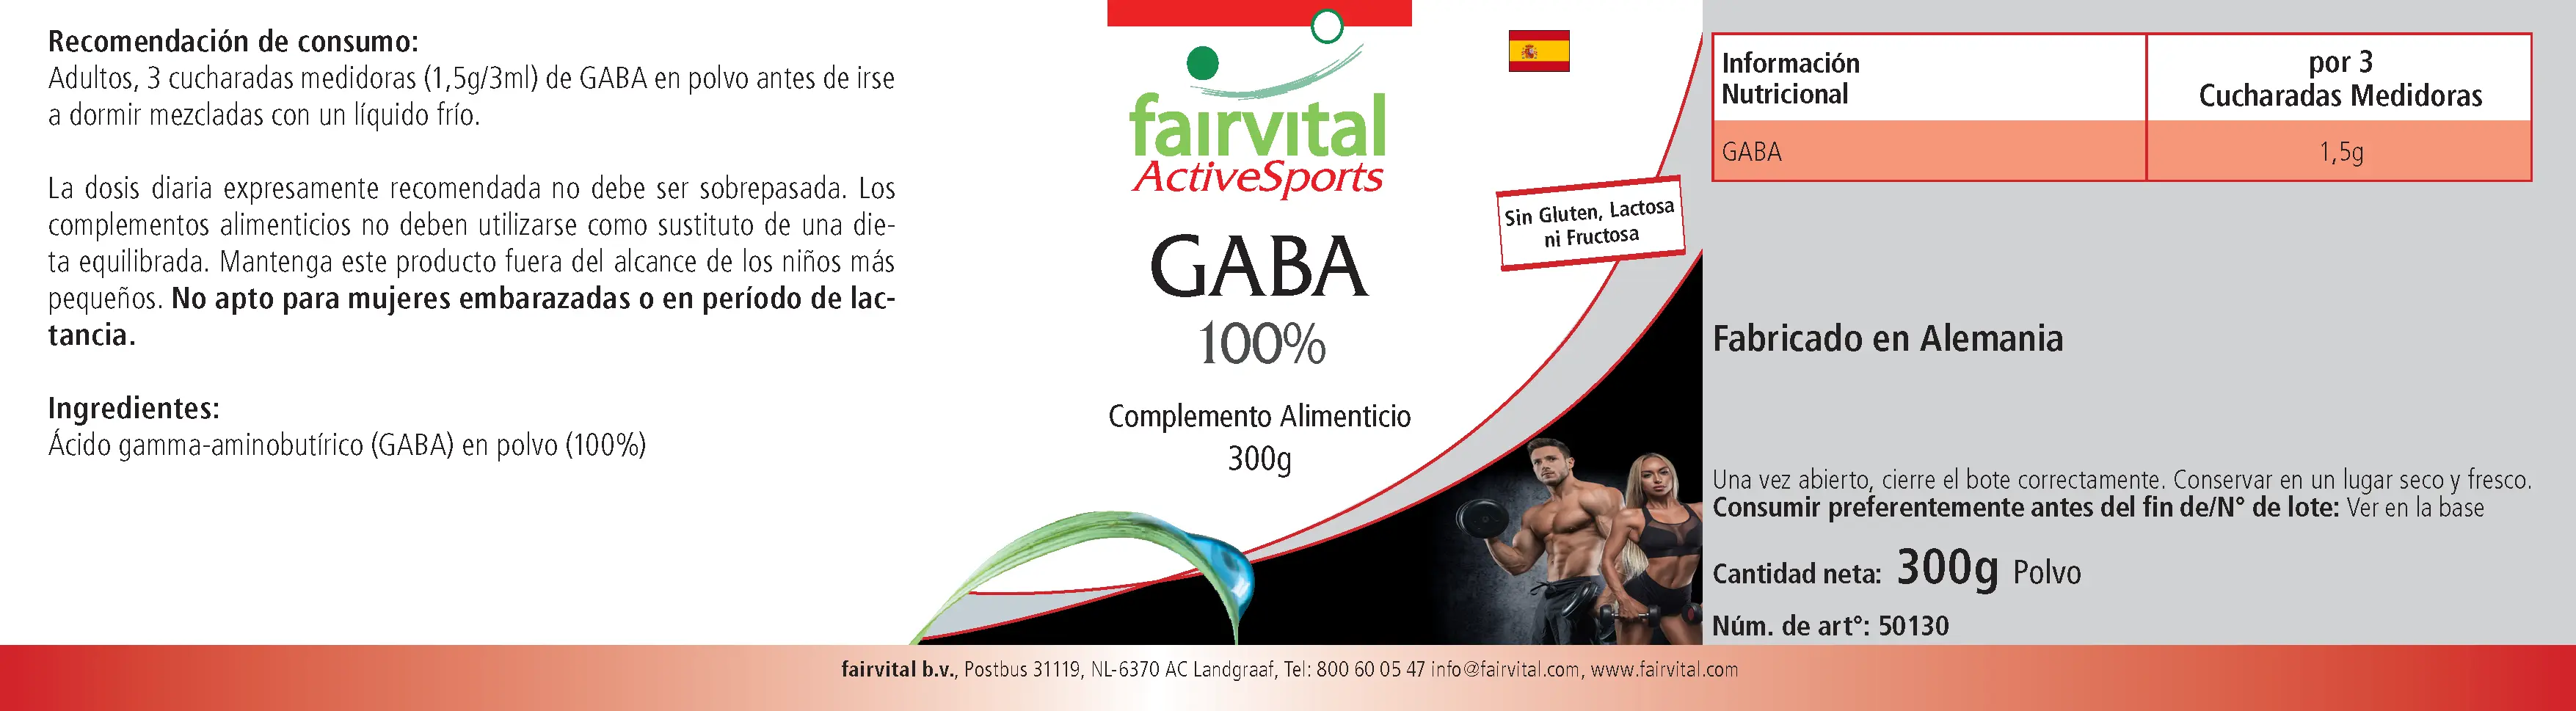 GABA 100% - Powder